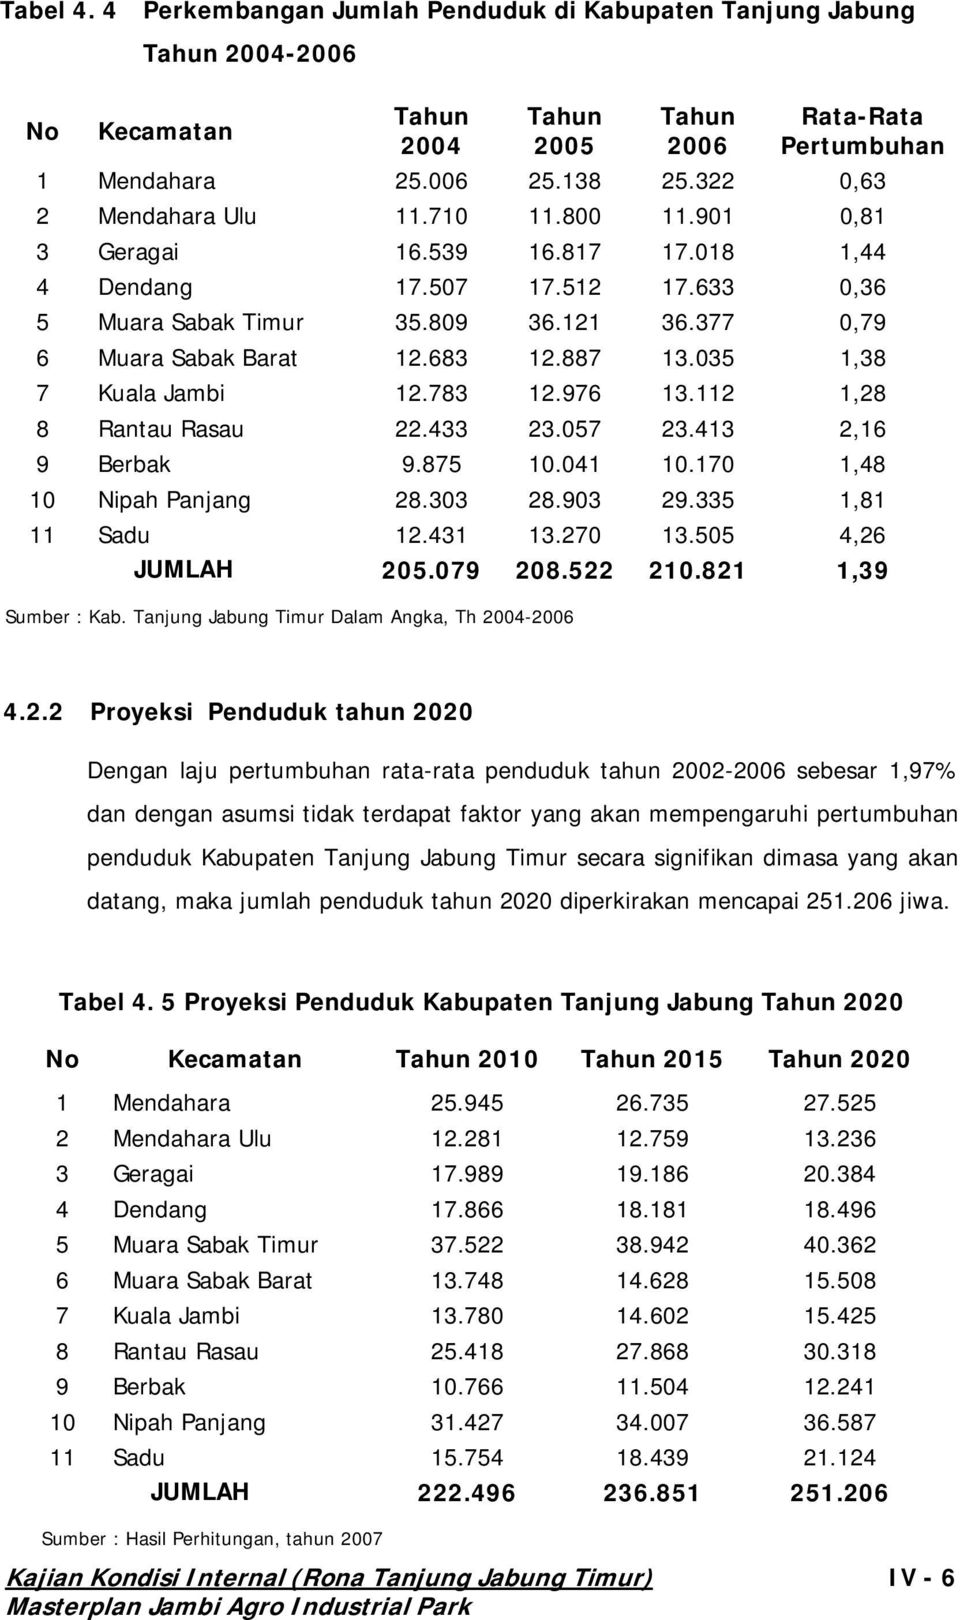 821 1,39 Sumber : Kab. Tanjung Jabu ng Timur Dalam Angka, Th 2004-2006 0,81 3 Geragai 16.539 16.817 17.018 1,44 4 Dendang 17.507 17.512 17.633 0,36 7 Kuala Jambi 12.783 12.976 13.